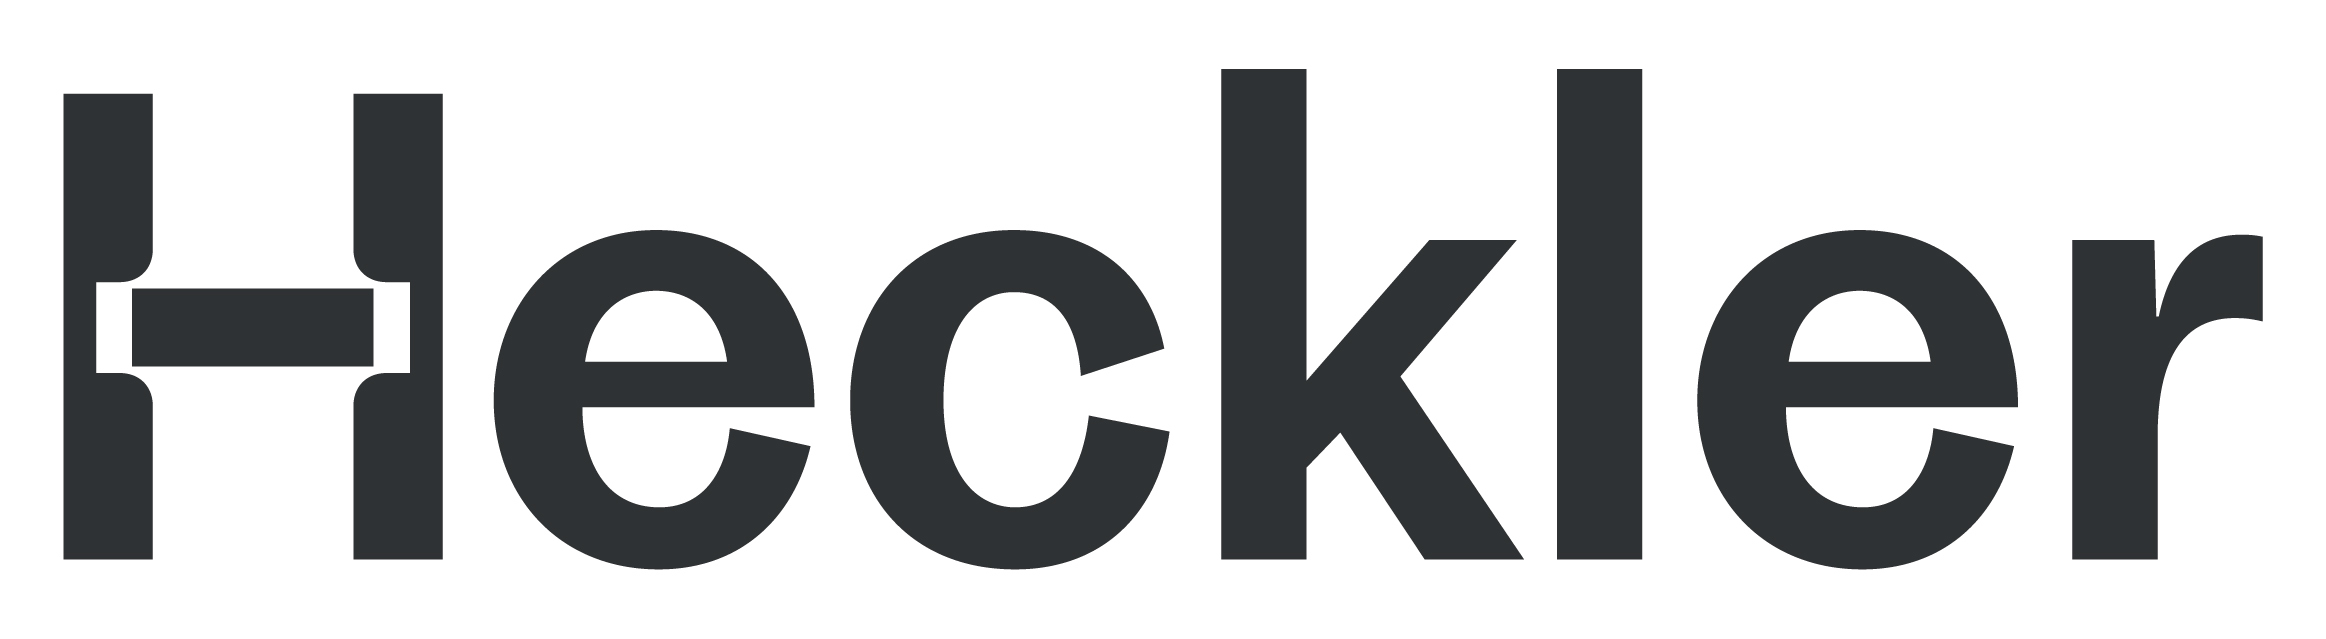 heckler-logo-positive-rgb